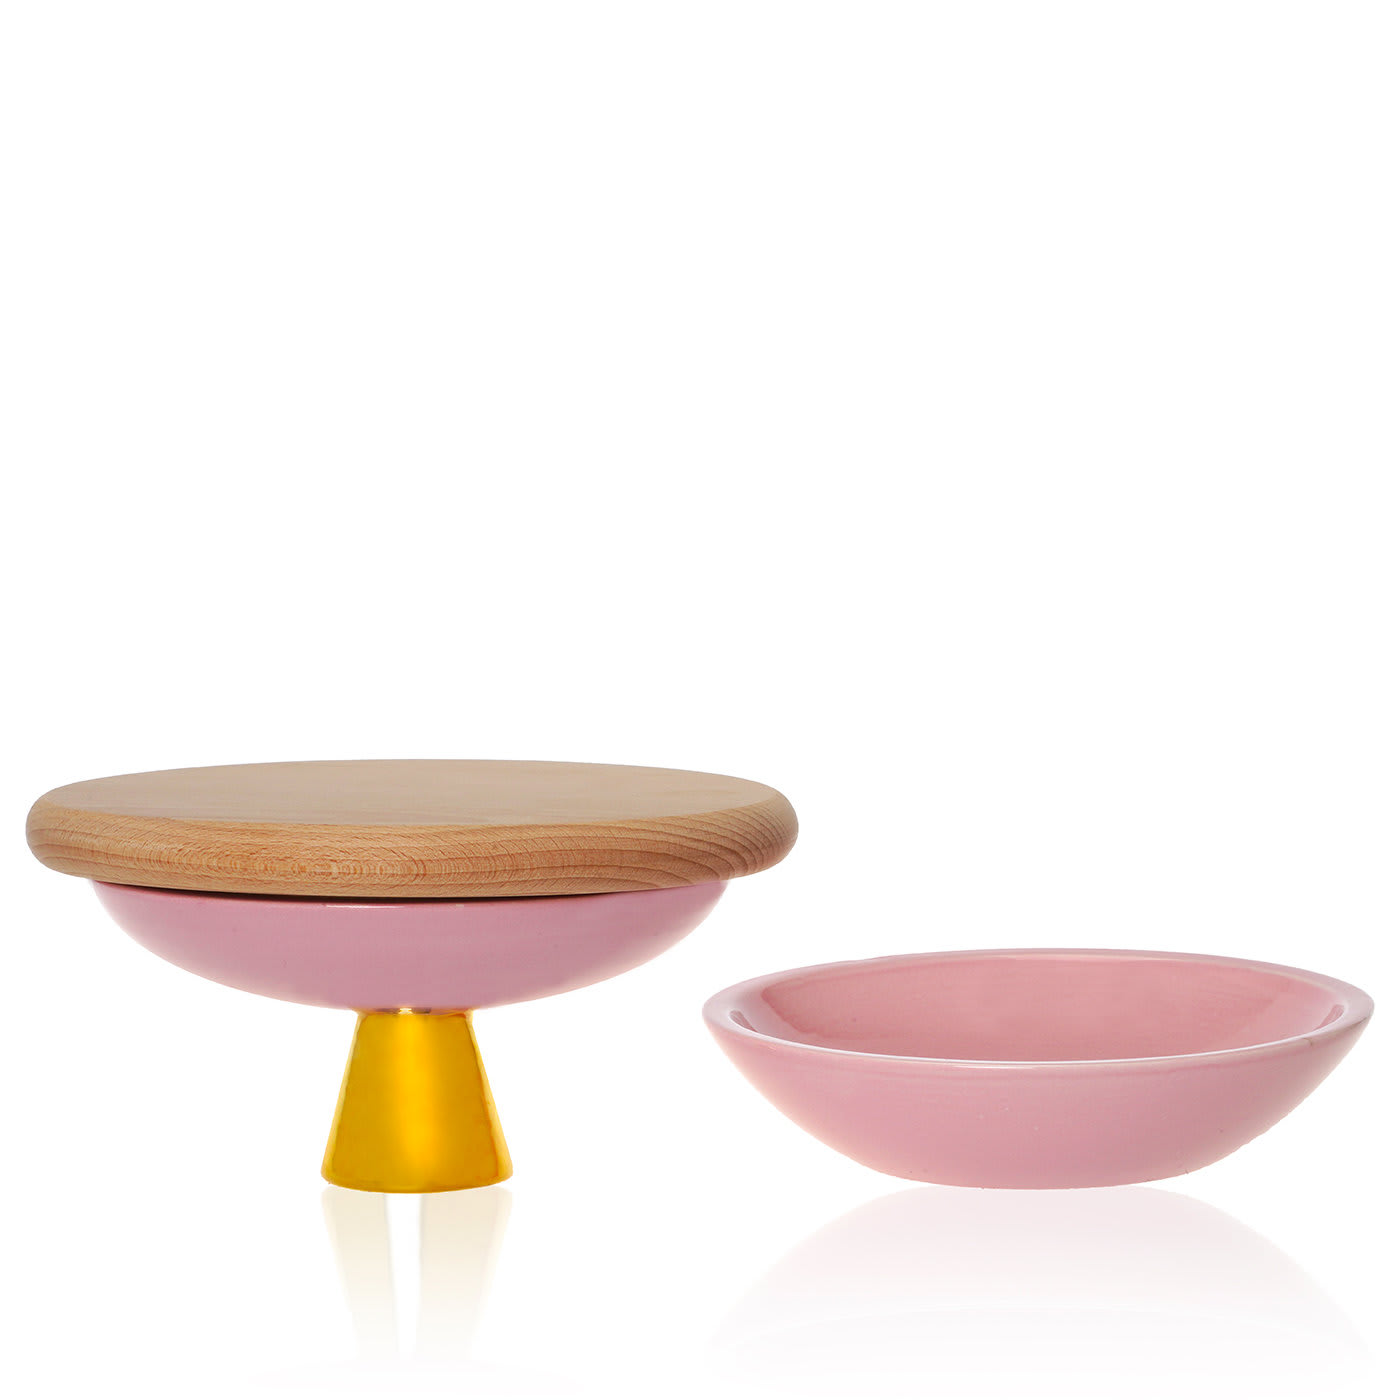 Entrèe Antique Pink Small Table Set - Atelier Macramè